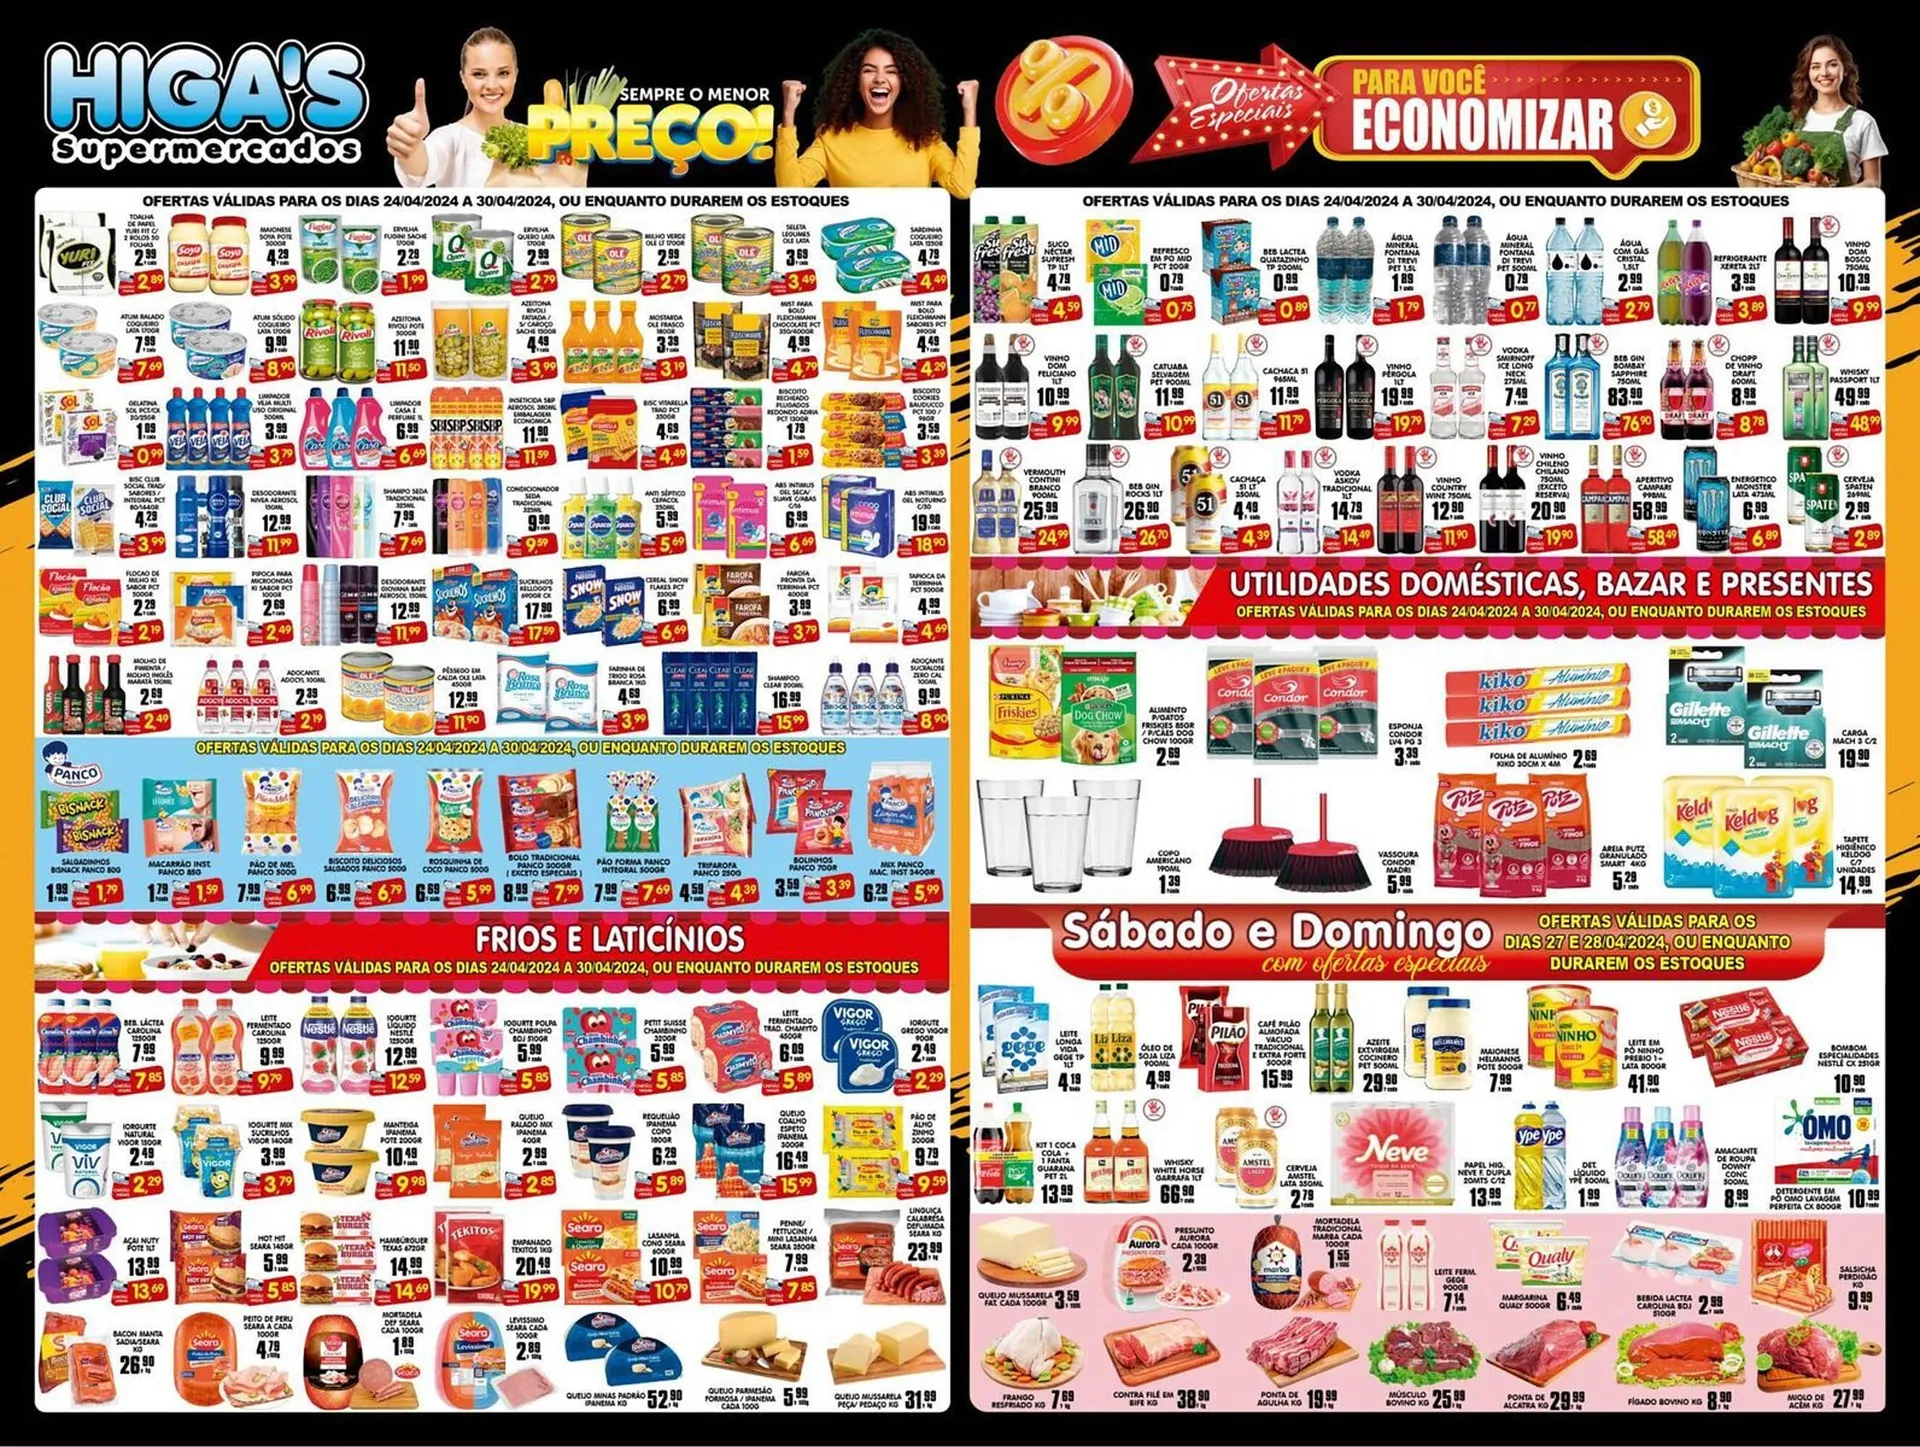 Catálogo Higas Supermercado - 2